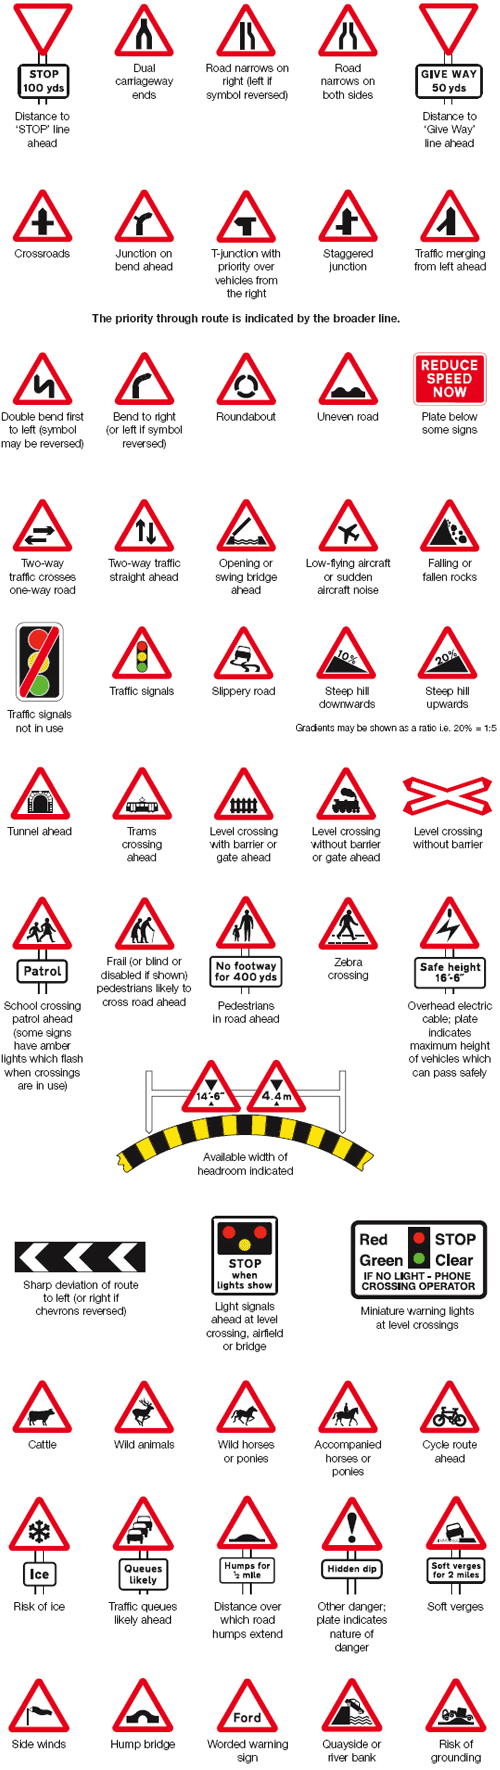 Warnings signs - znaki ostrzegawcze